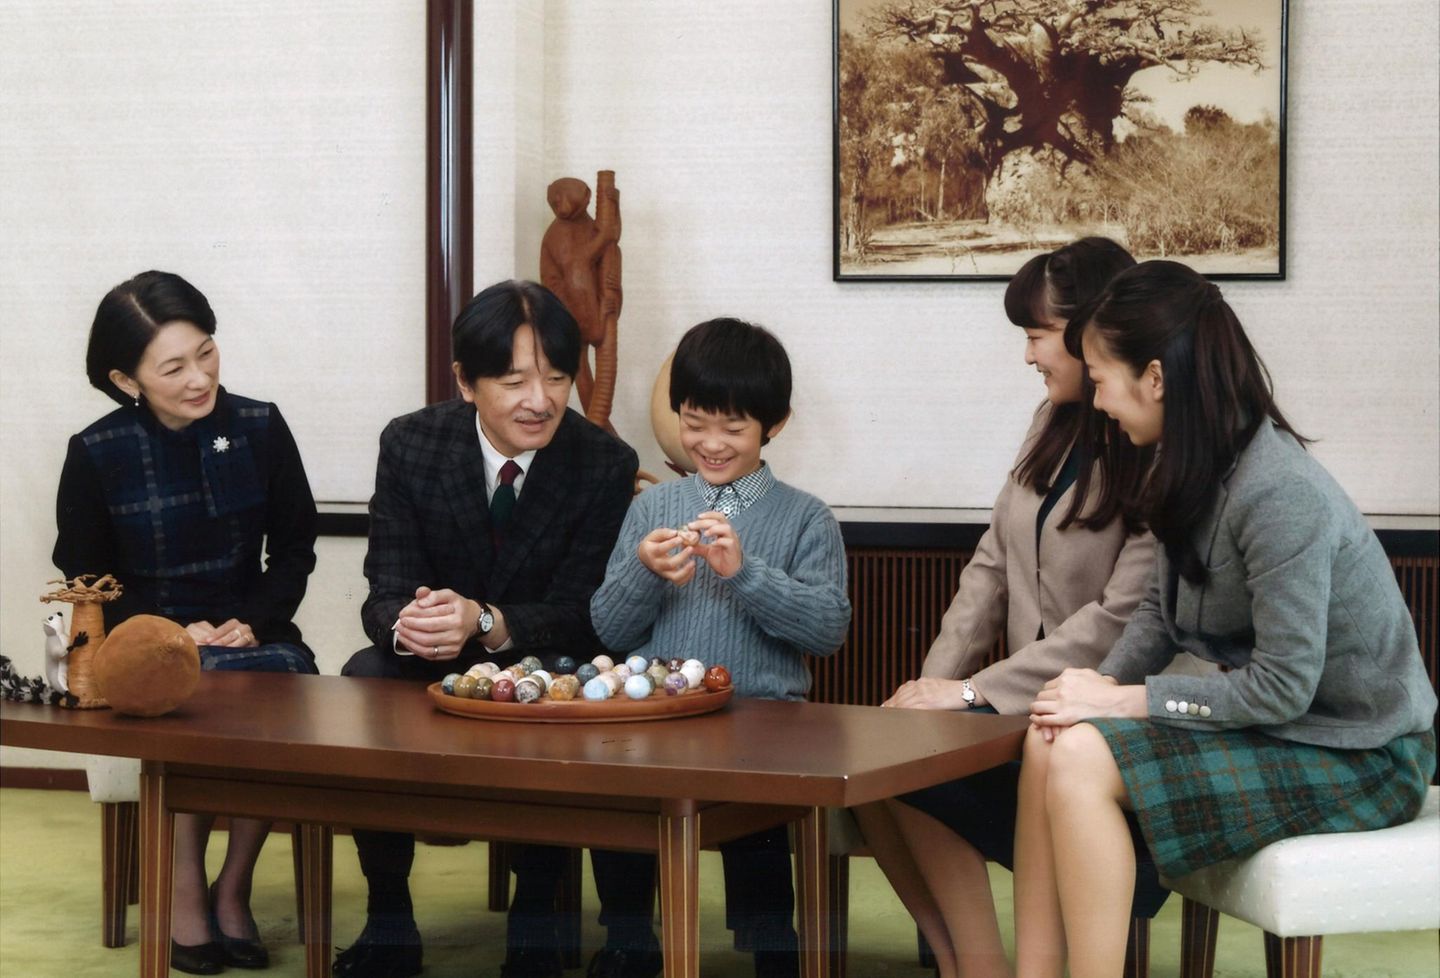 30. November 2016  Prinz Akishino wird 51 Jahre alt und lässt sich mit seiner Familie fotografieren. Um den Tisch versammelt haben sich seine drei Kinder Hisahito, Mako, Kako und seine Frau Kiko.